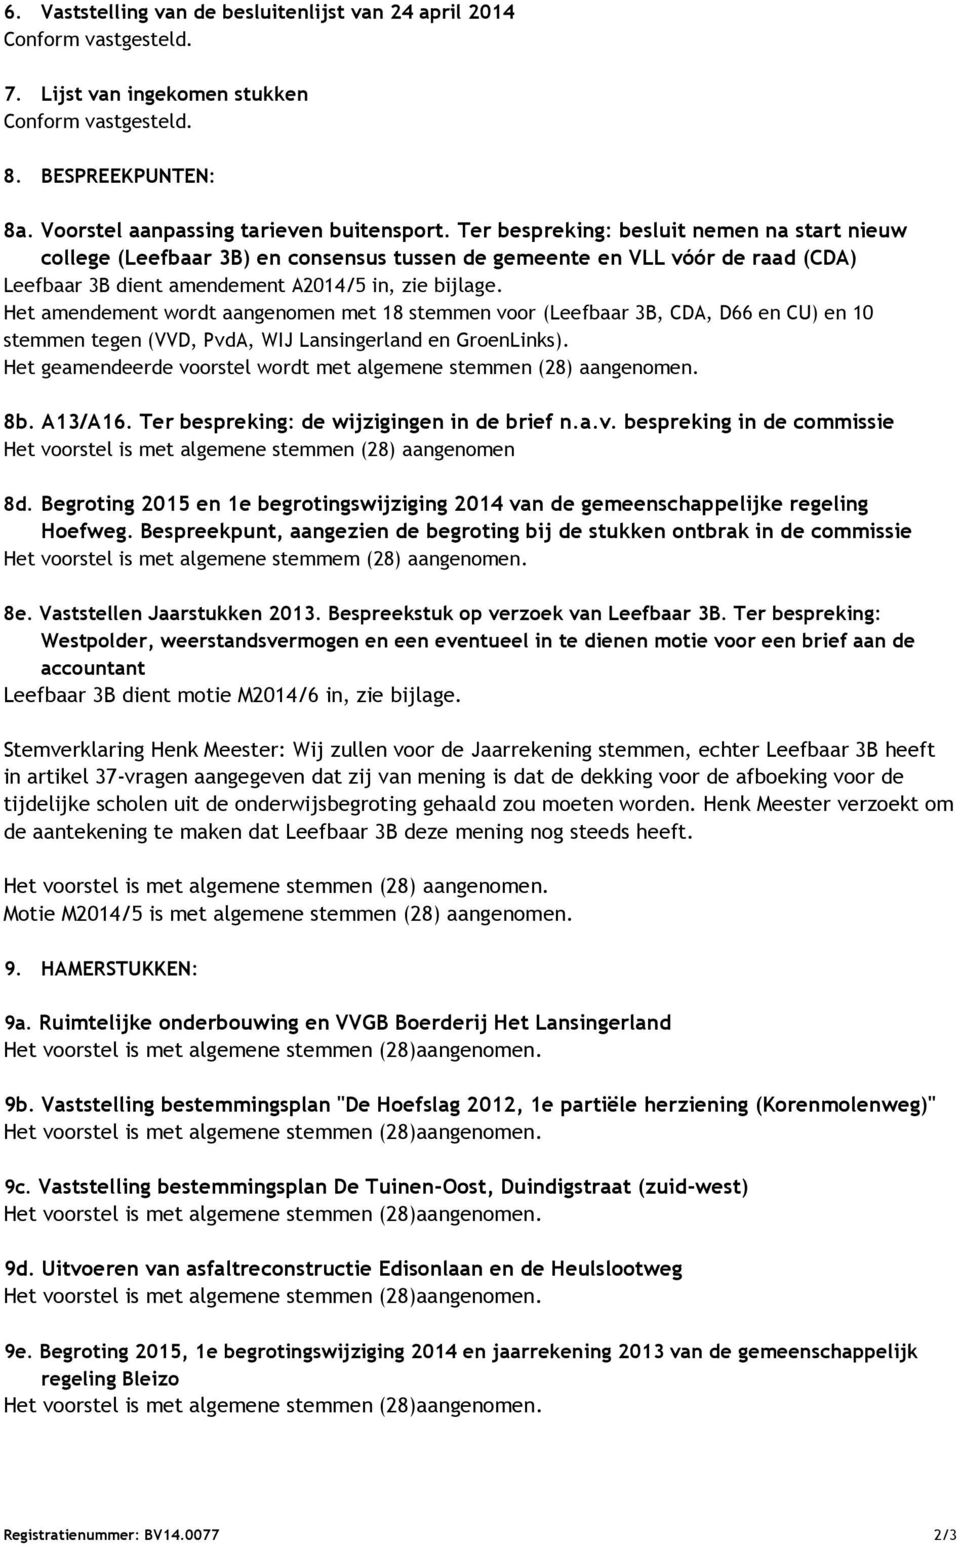 Het amendement wordt aangenomen met 18 stemmen voor (Leefbaar 3B, CDA, D66 en CU) en 10 stemmen tegen (VVD, PvdA, WIJ Lansingerland en GroenLinks).